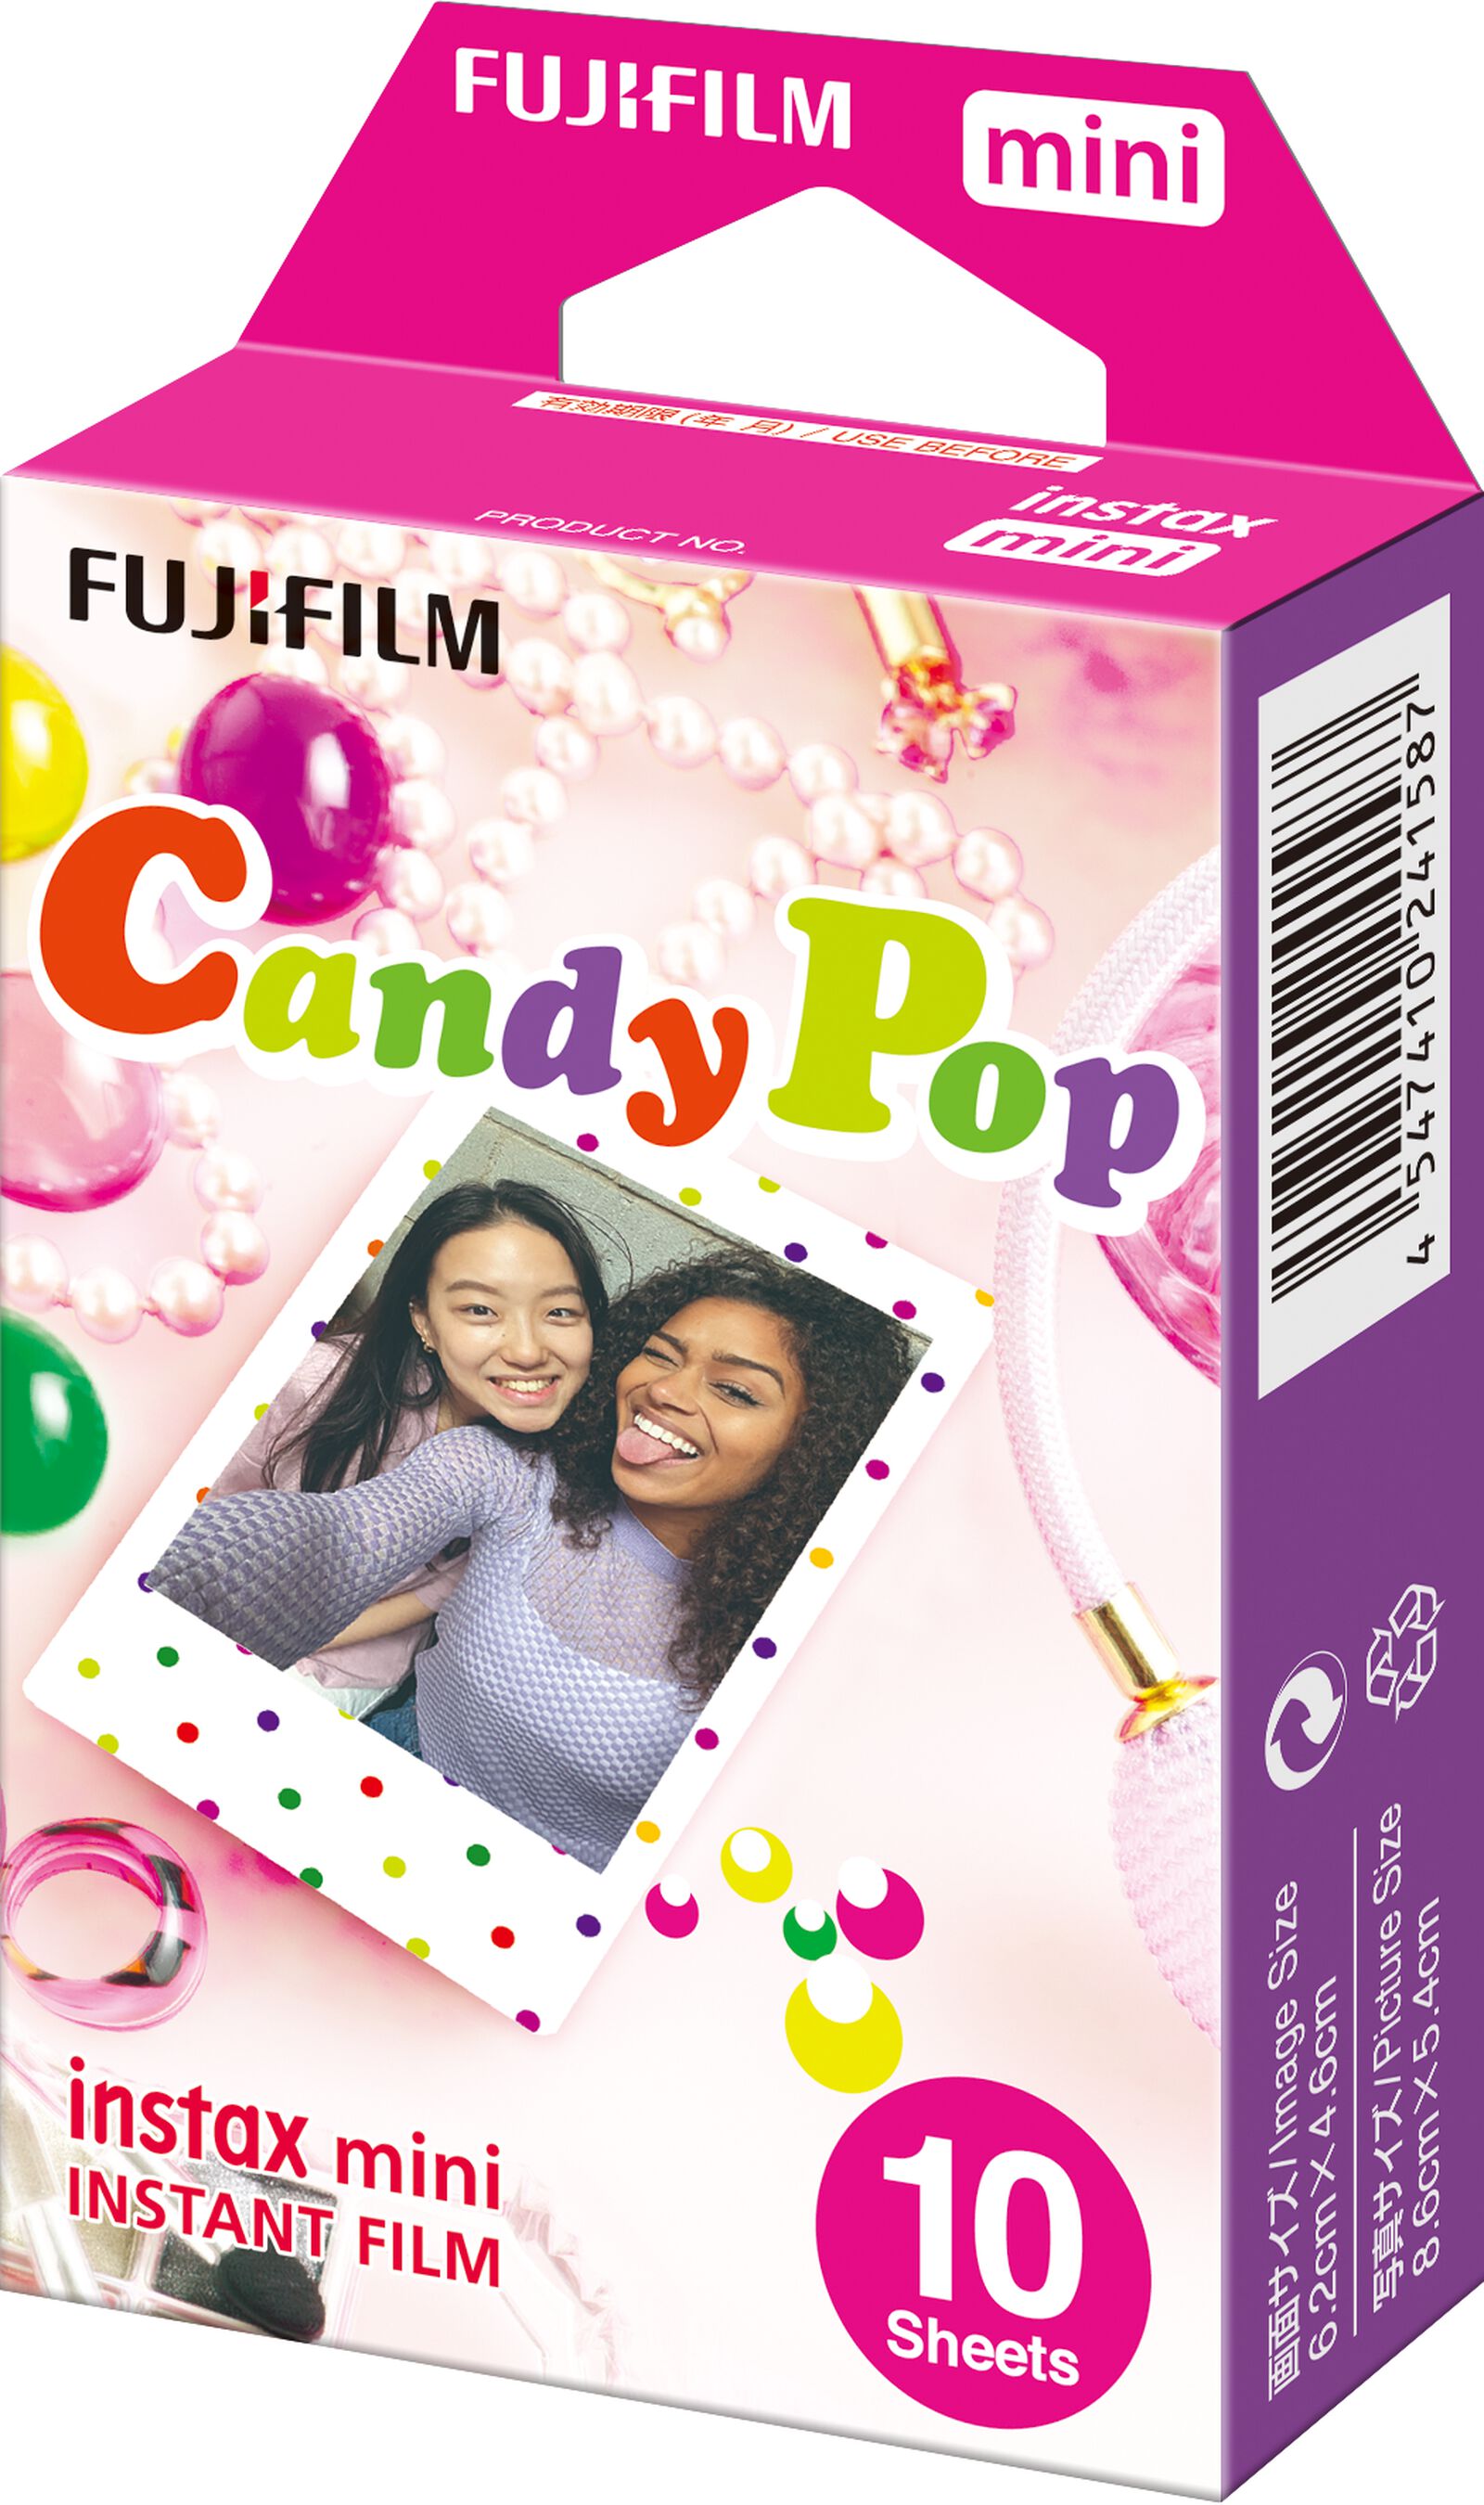 10er-Pack Fotopapier für Fujifilm Instax Mini, Candypop - 60300396 - HEMA